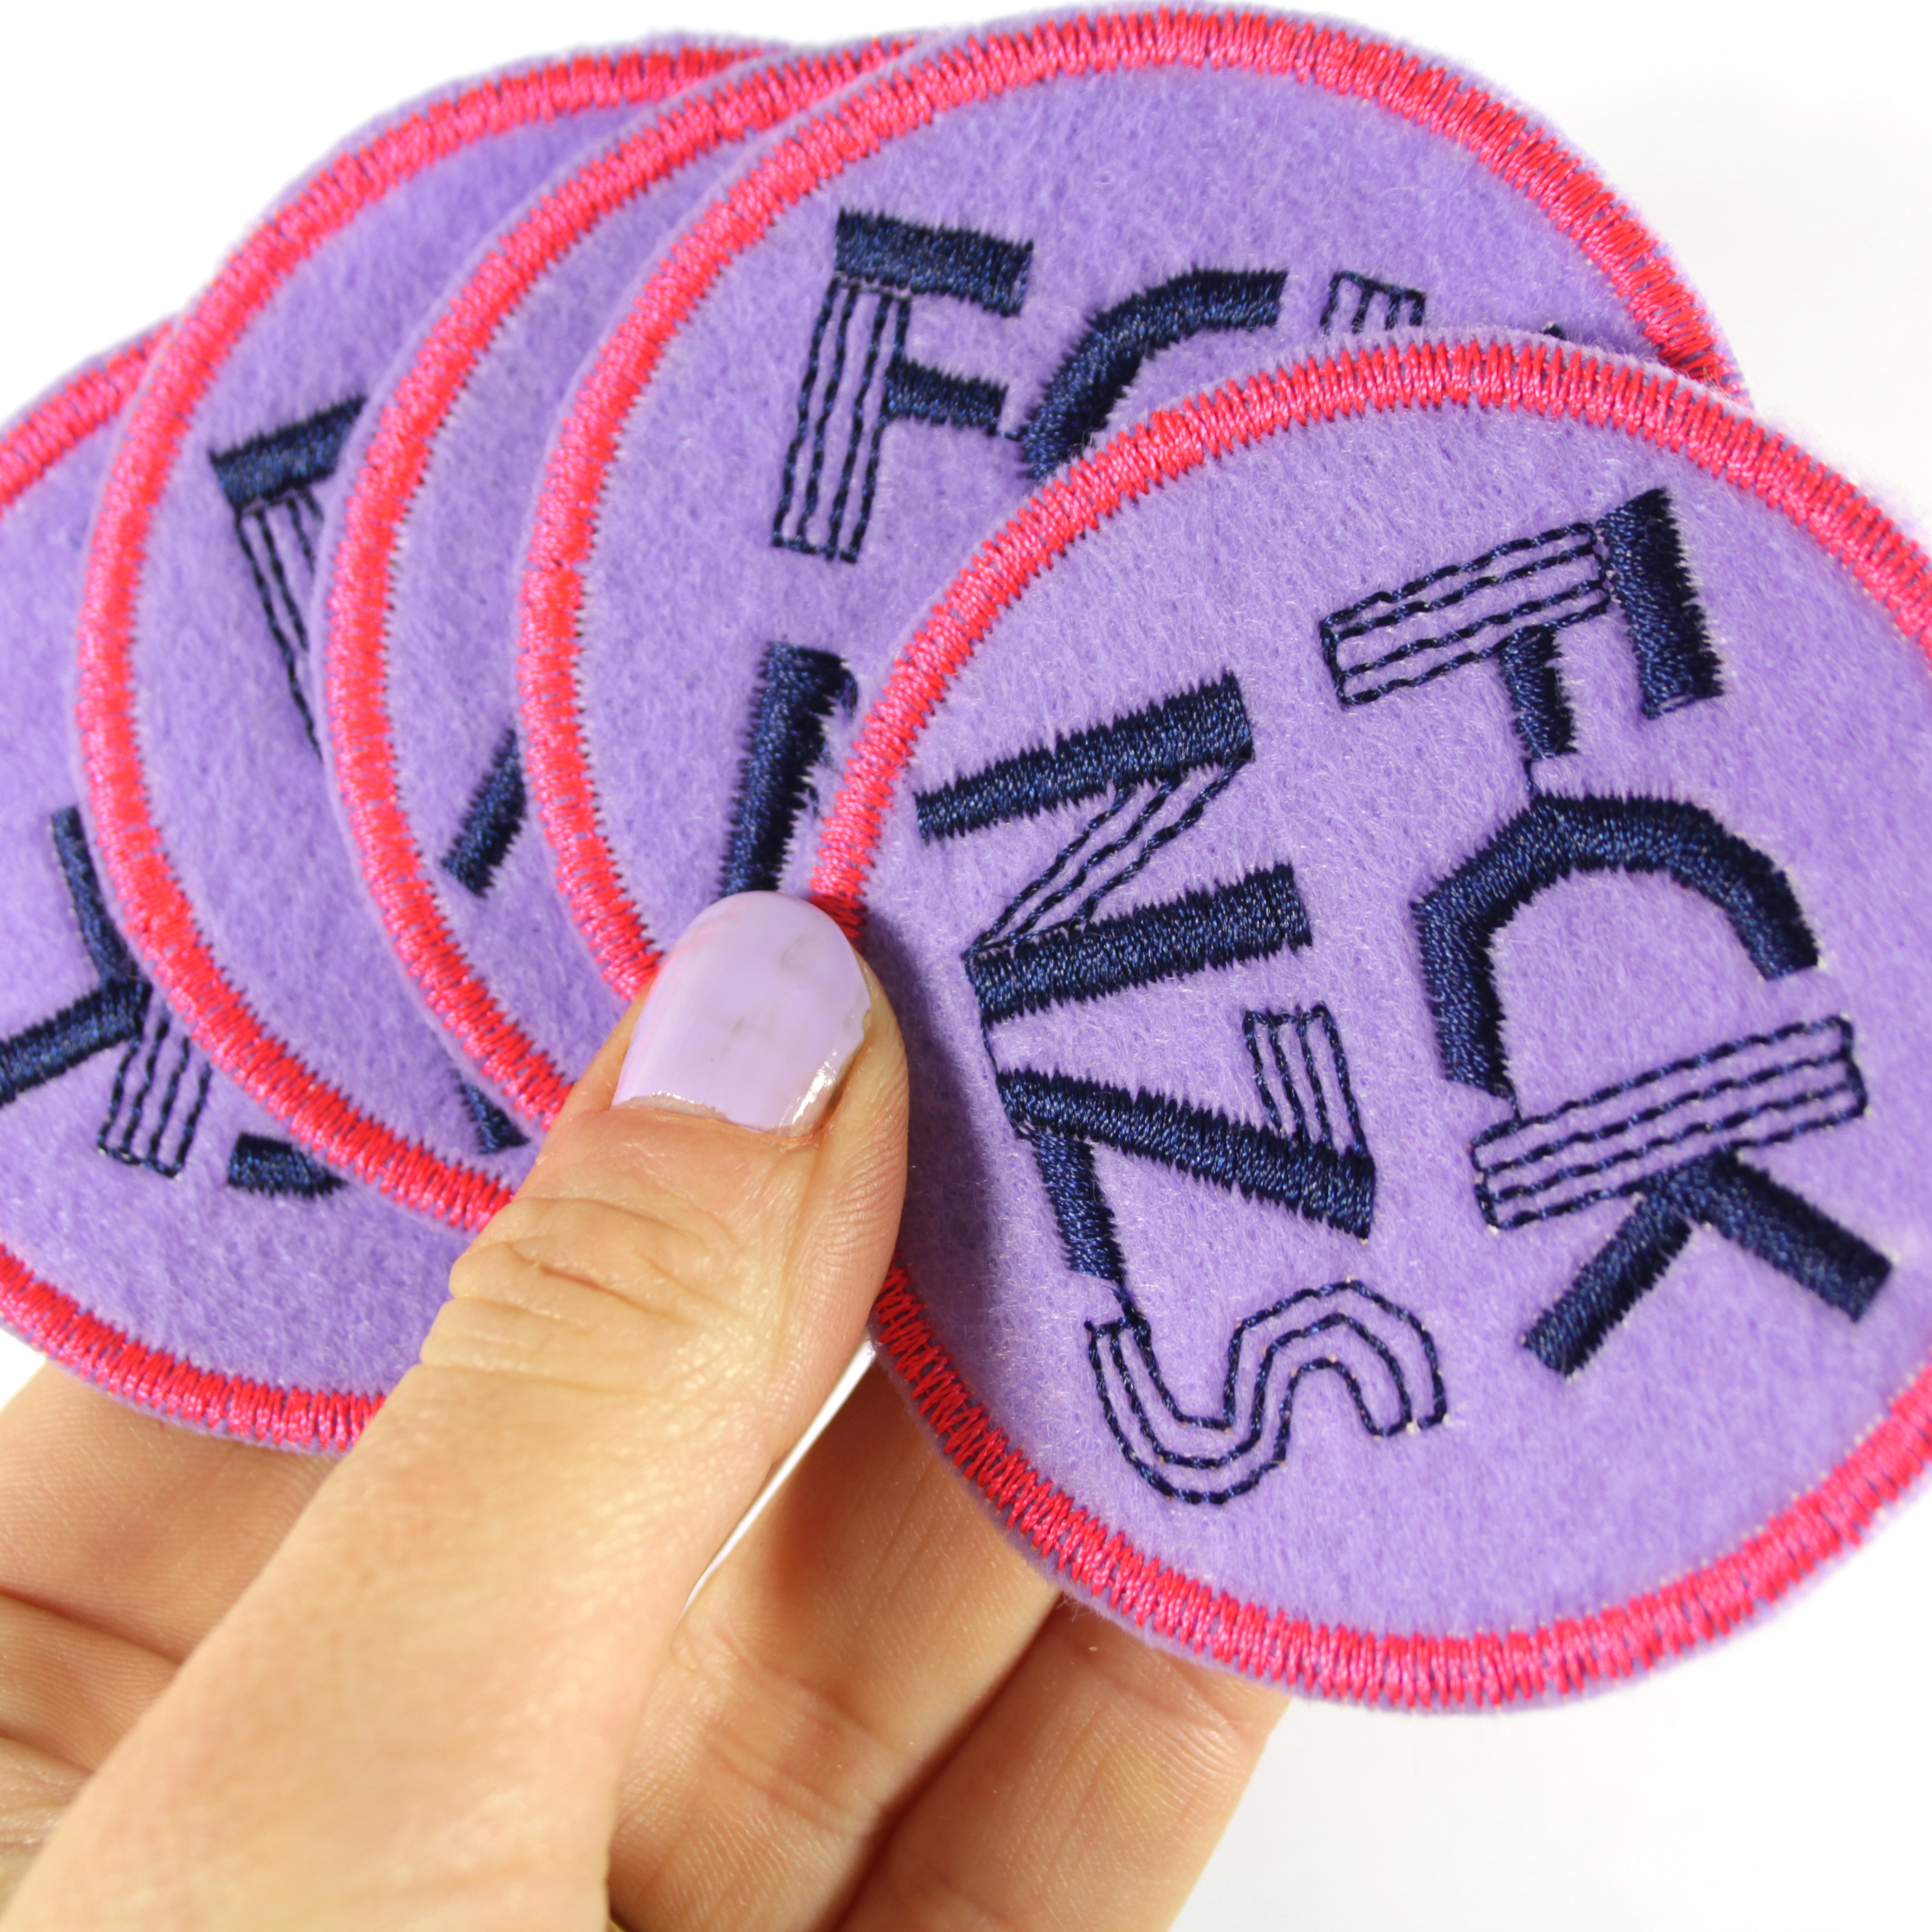 FCK NZS Patches zum aufbügeln - Das bunte Statement! lila pink